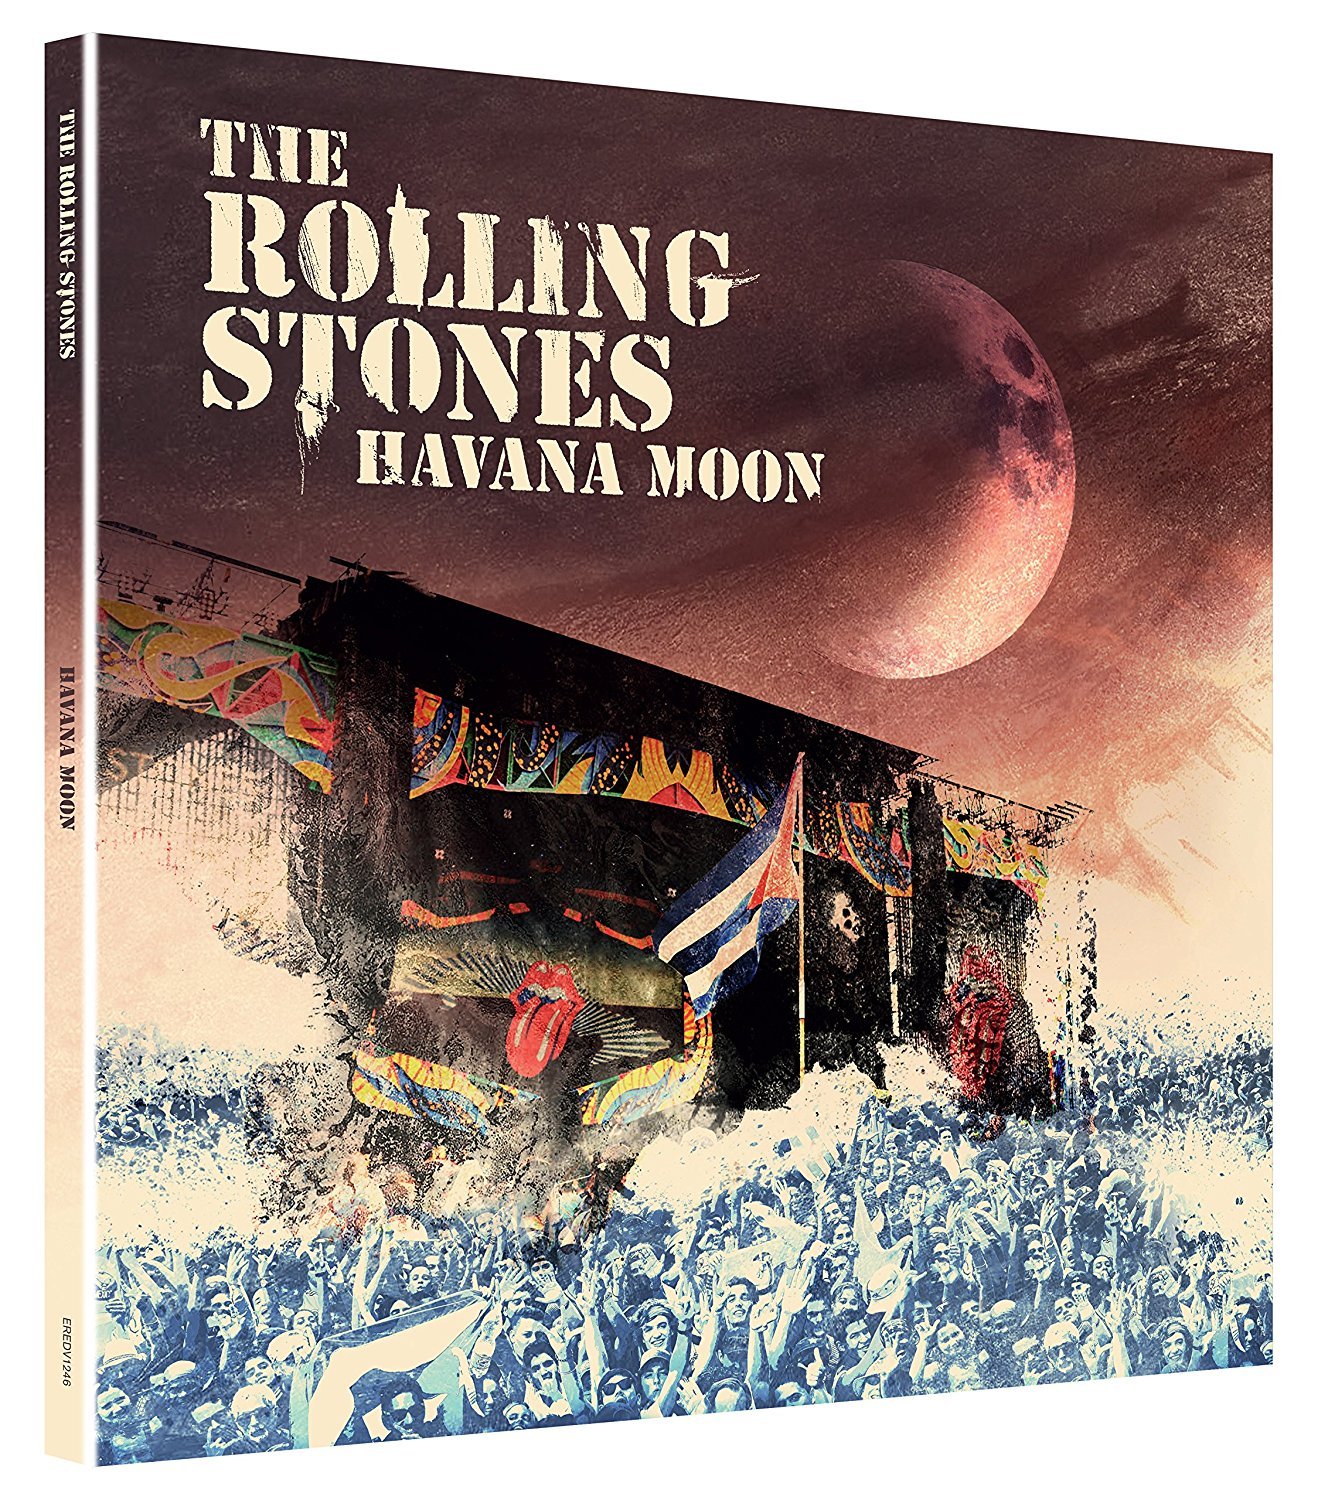 Rolling Stones - Havana Moon Deluxe (Ltd. DVD + 1 Blu-ray + 2 CDs) [4 Discs]